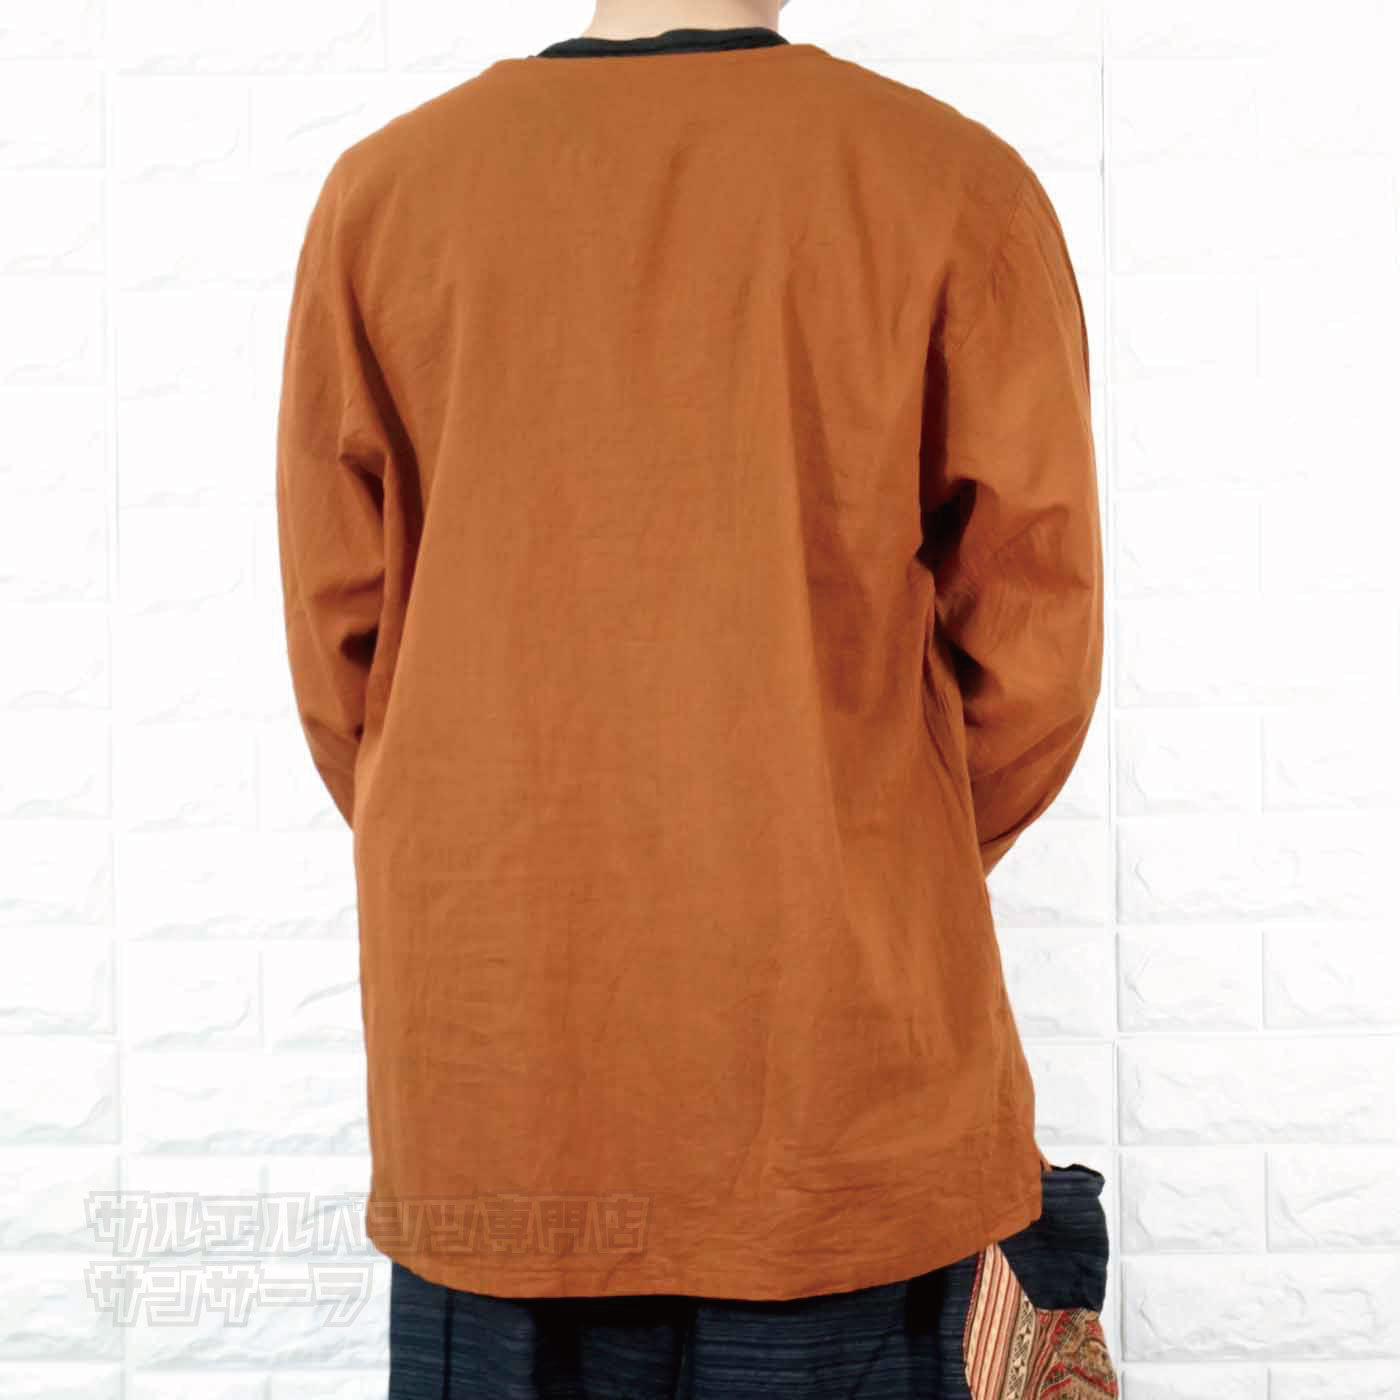 エスニック Tシャツ 長袖 クルタシャツ トップス メンズ レディース ユニセックス ヒンディー ヒンドゥー 大きめサイズ ゆったり アジアン ファッションブラック